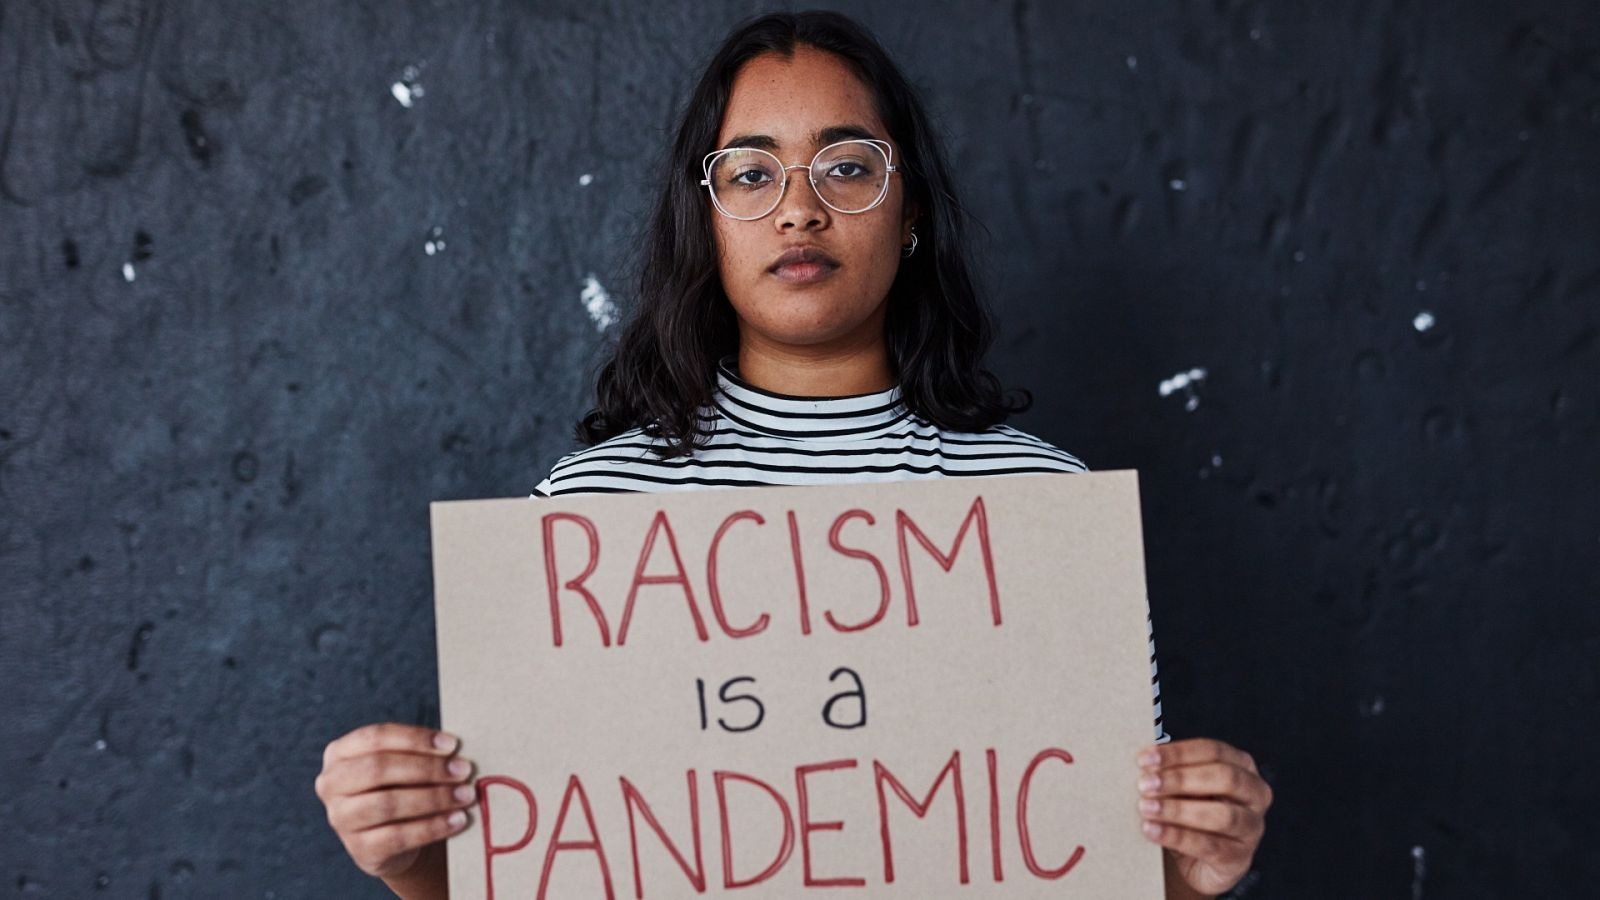 Una joven sostiene un cartel que denuncia "El racismo es una pandemia"